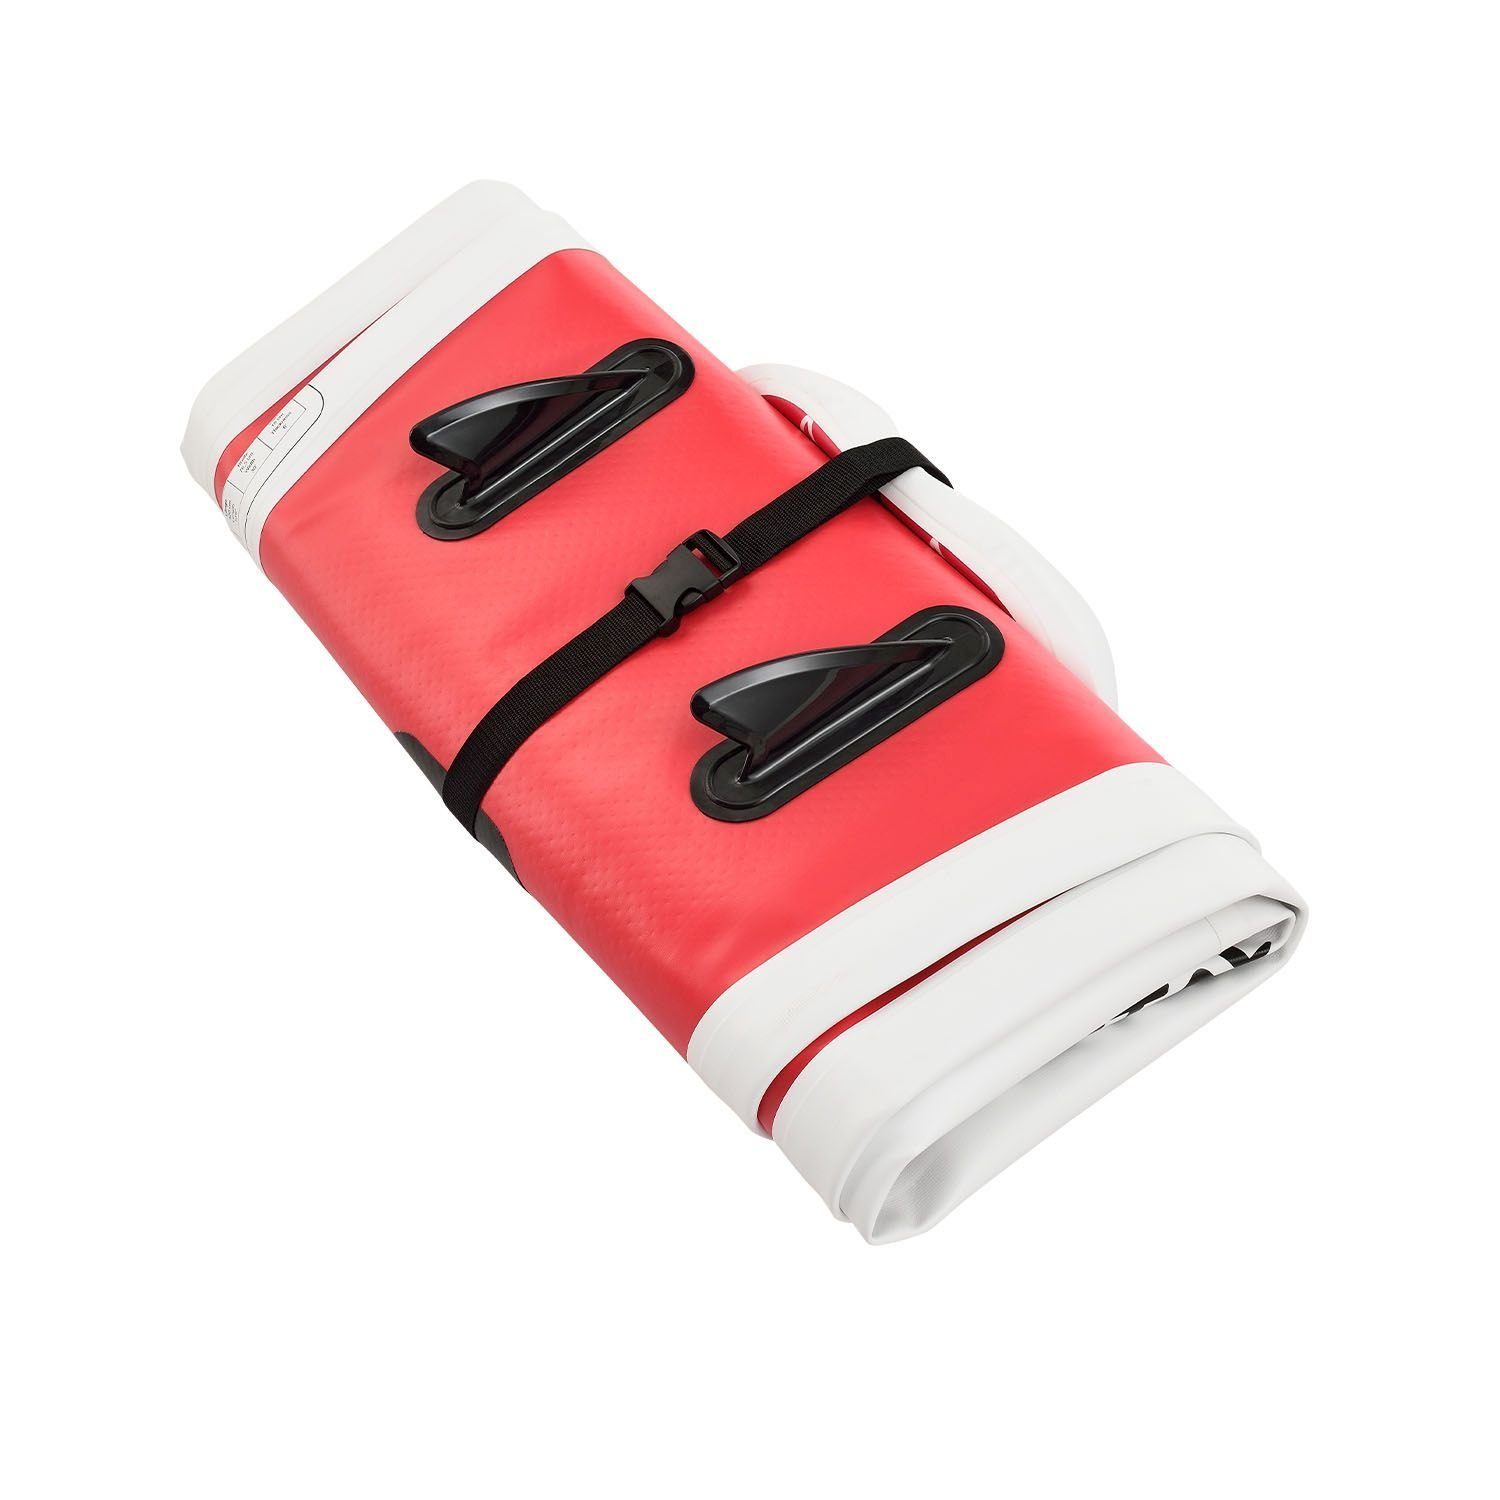 ArtSport Inflatable SUP-Board Pink Blizzard, inkl. Rosa Zubehör bis kg, und 150 Up Stand Anfänger, Tragetasche Board, für ideal Paddling